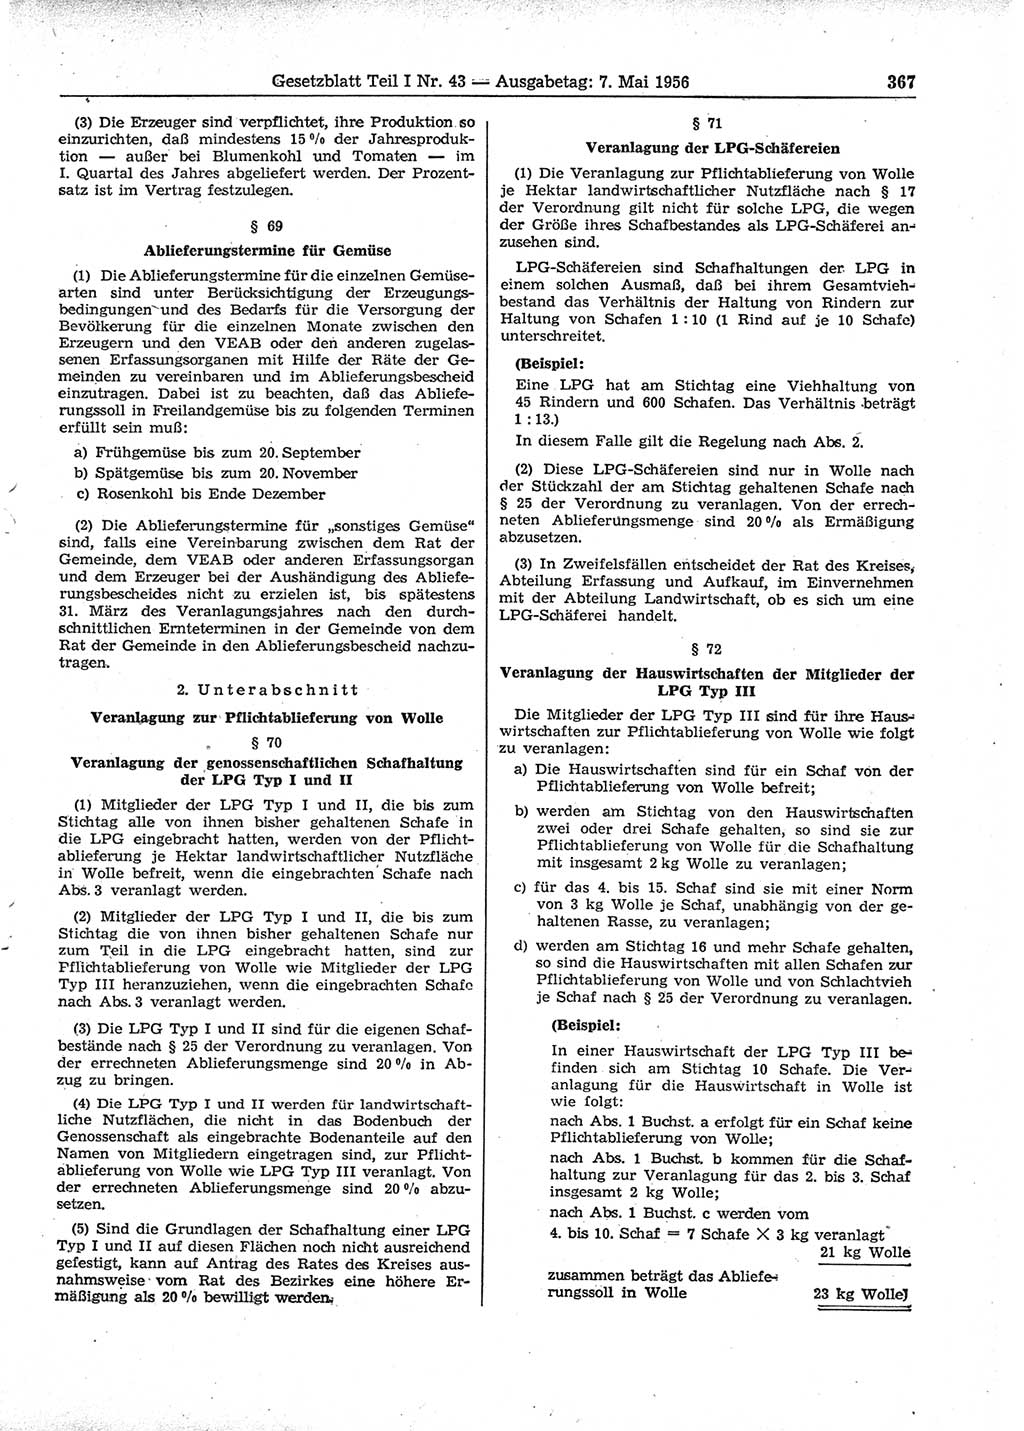 Gesetzblatt (GBl.) der Deutschen Demokratischen Republik (DDR) Teil Ⅰ 1956, Seite 367 (GBl. DDR Ⅰ 1956, S. 367)